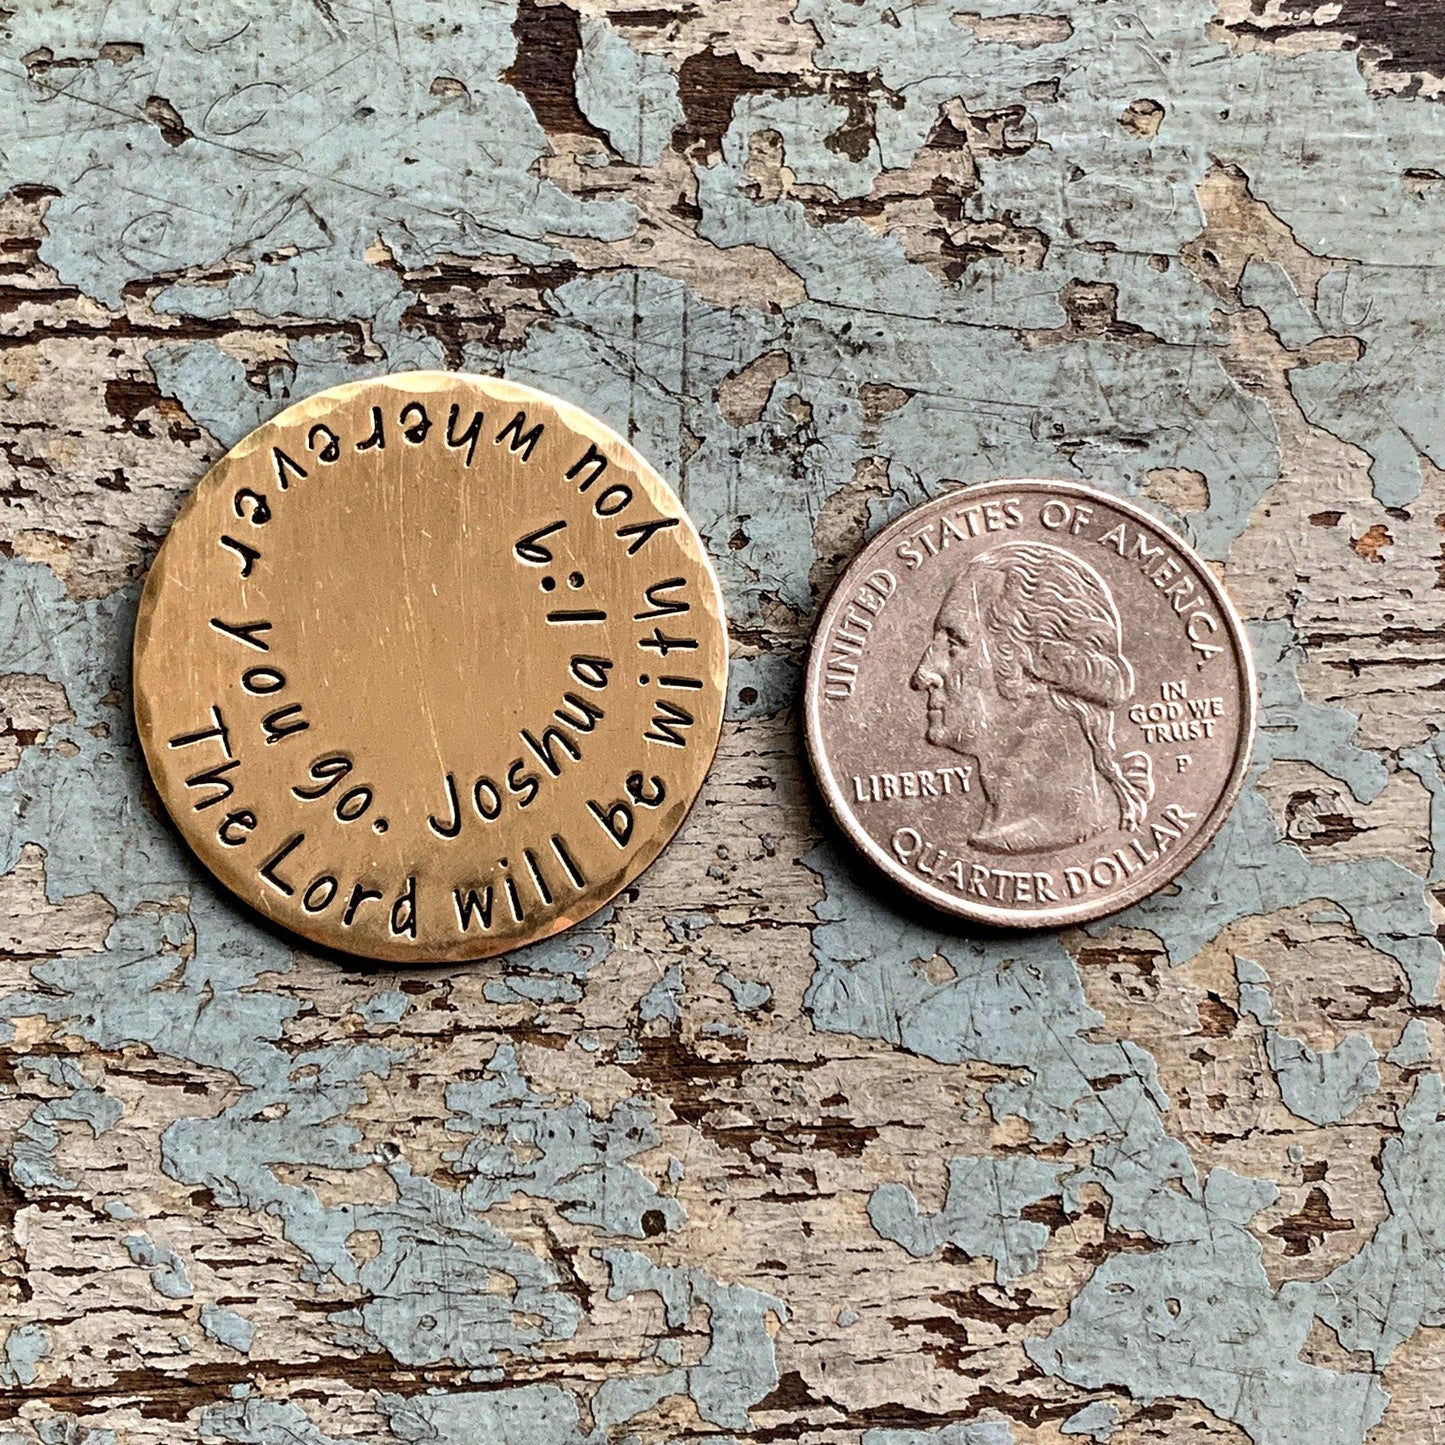 1.25" brass coin